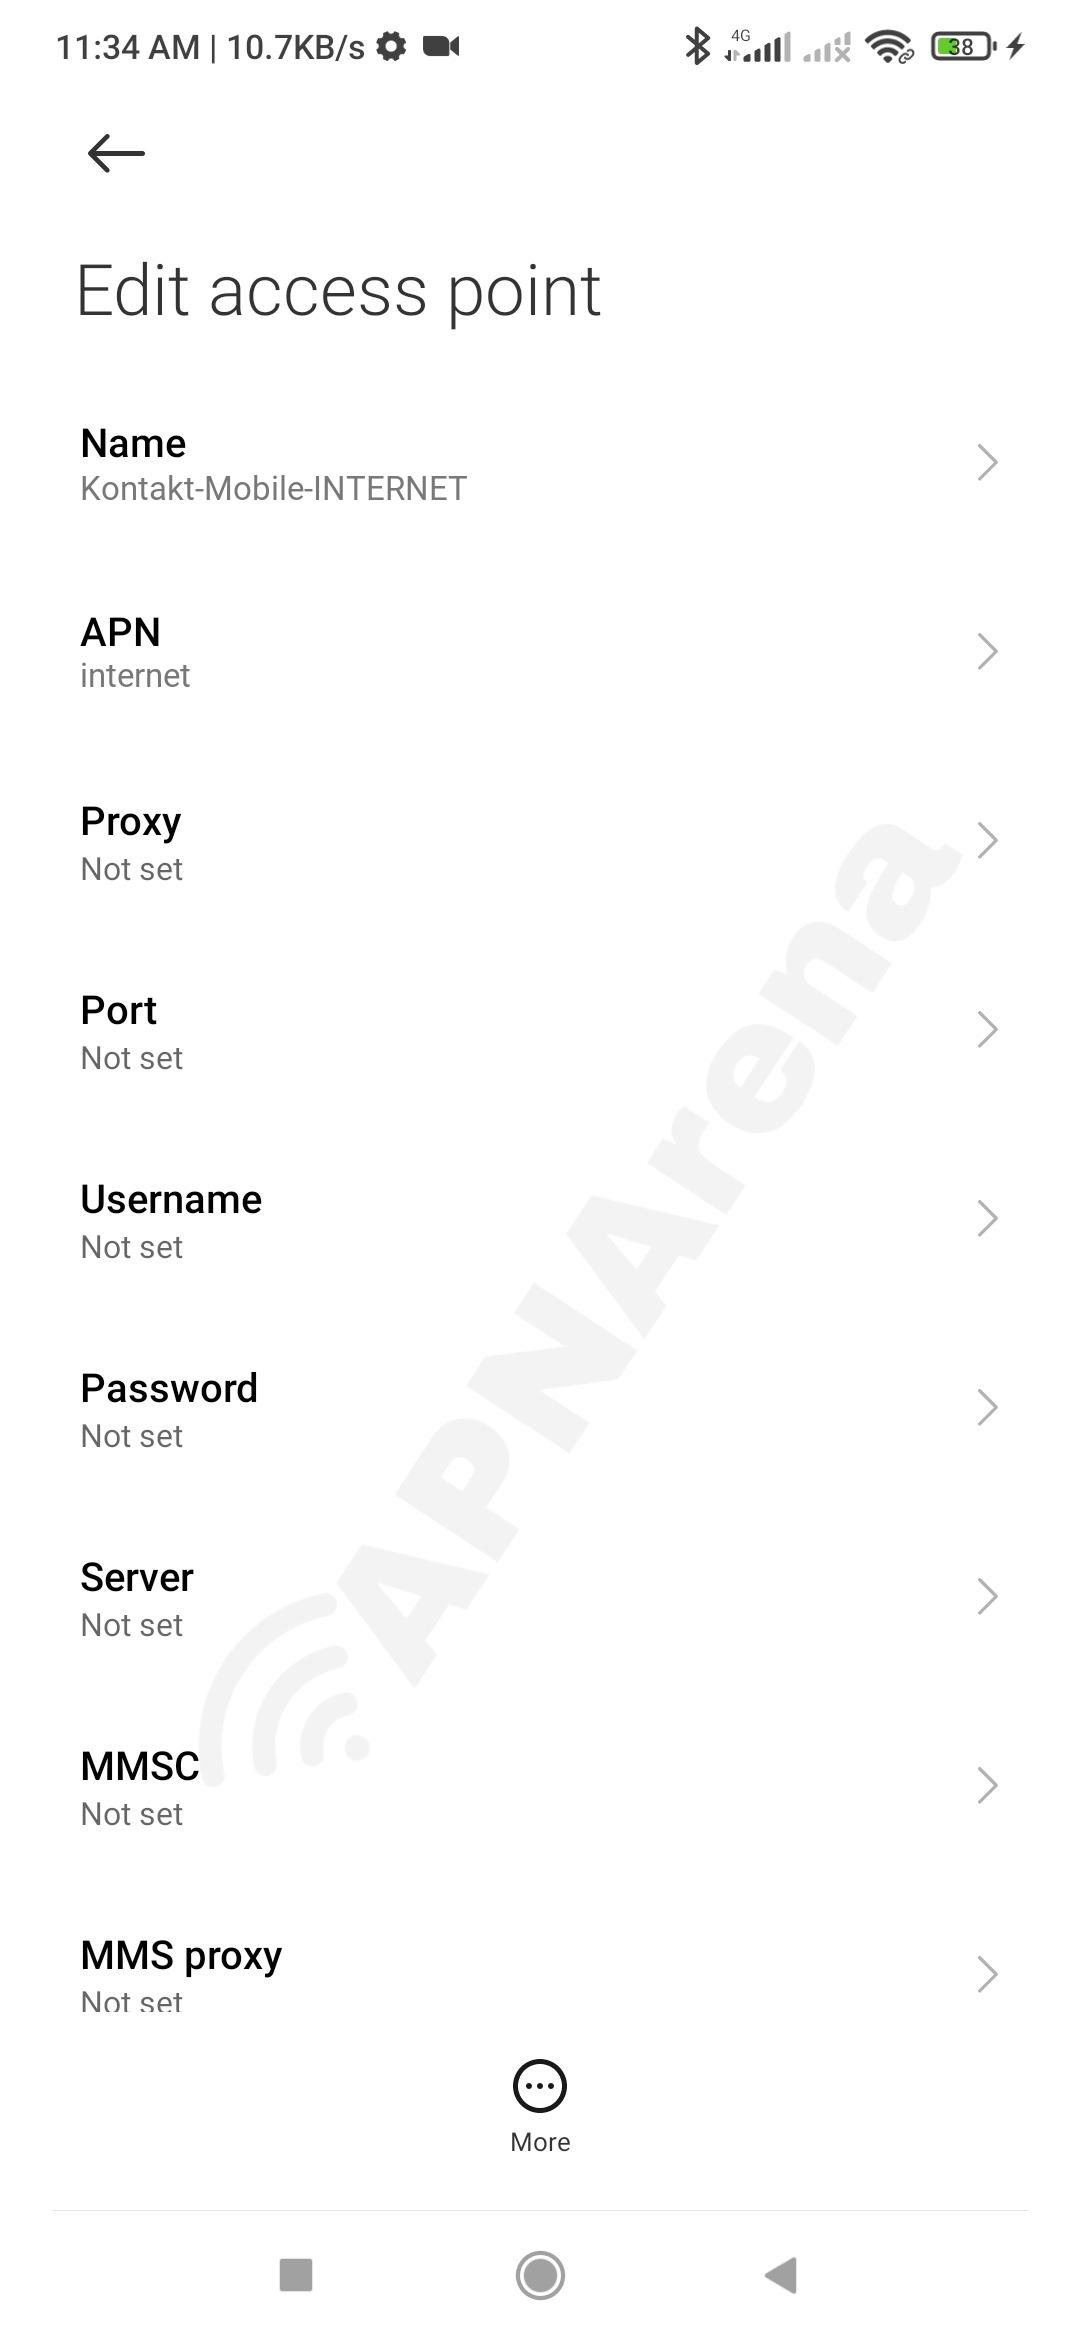 Kontakt Mobile APN Settings for Android